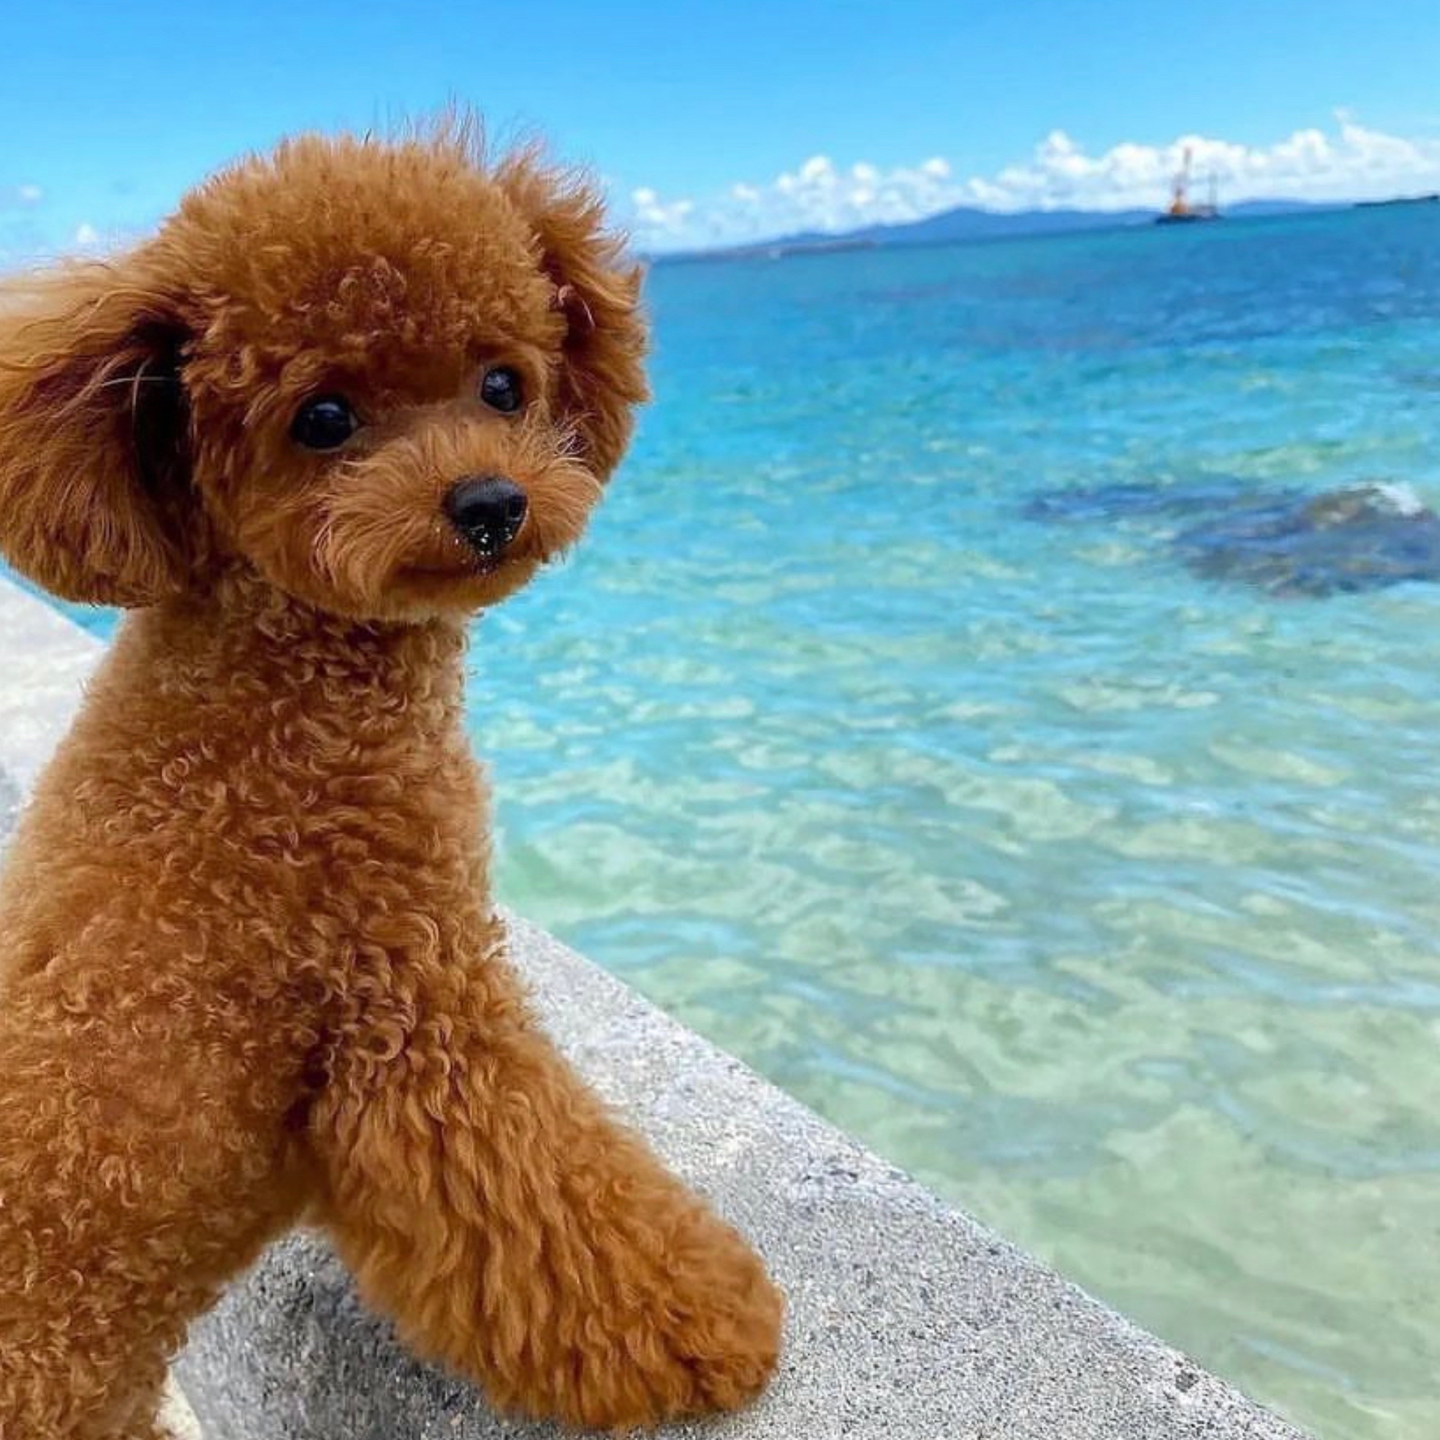 A poodle enjoying the seaside